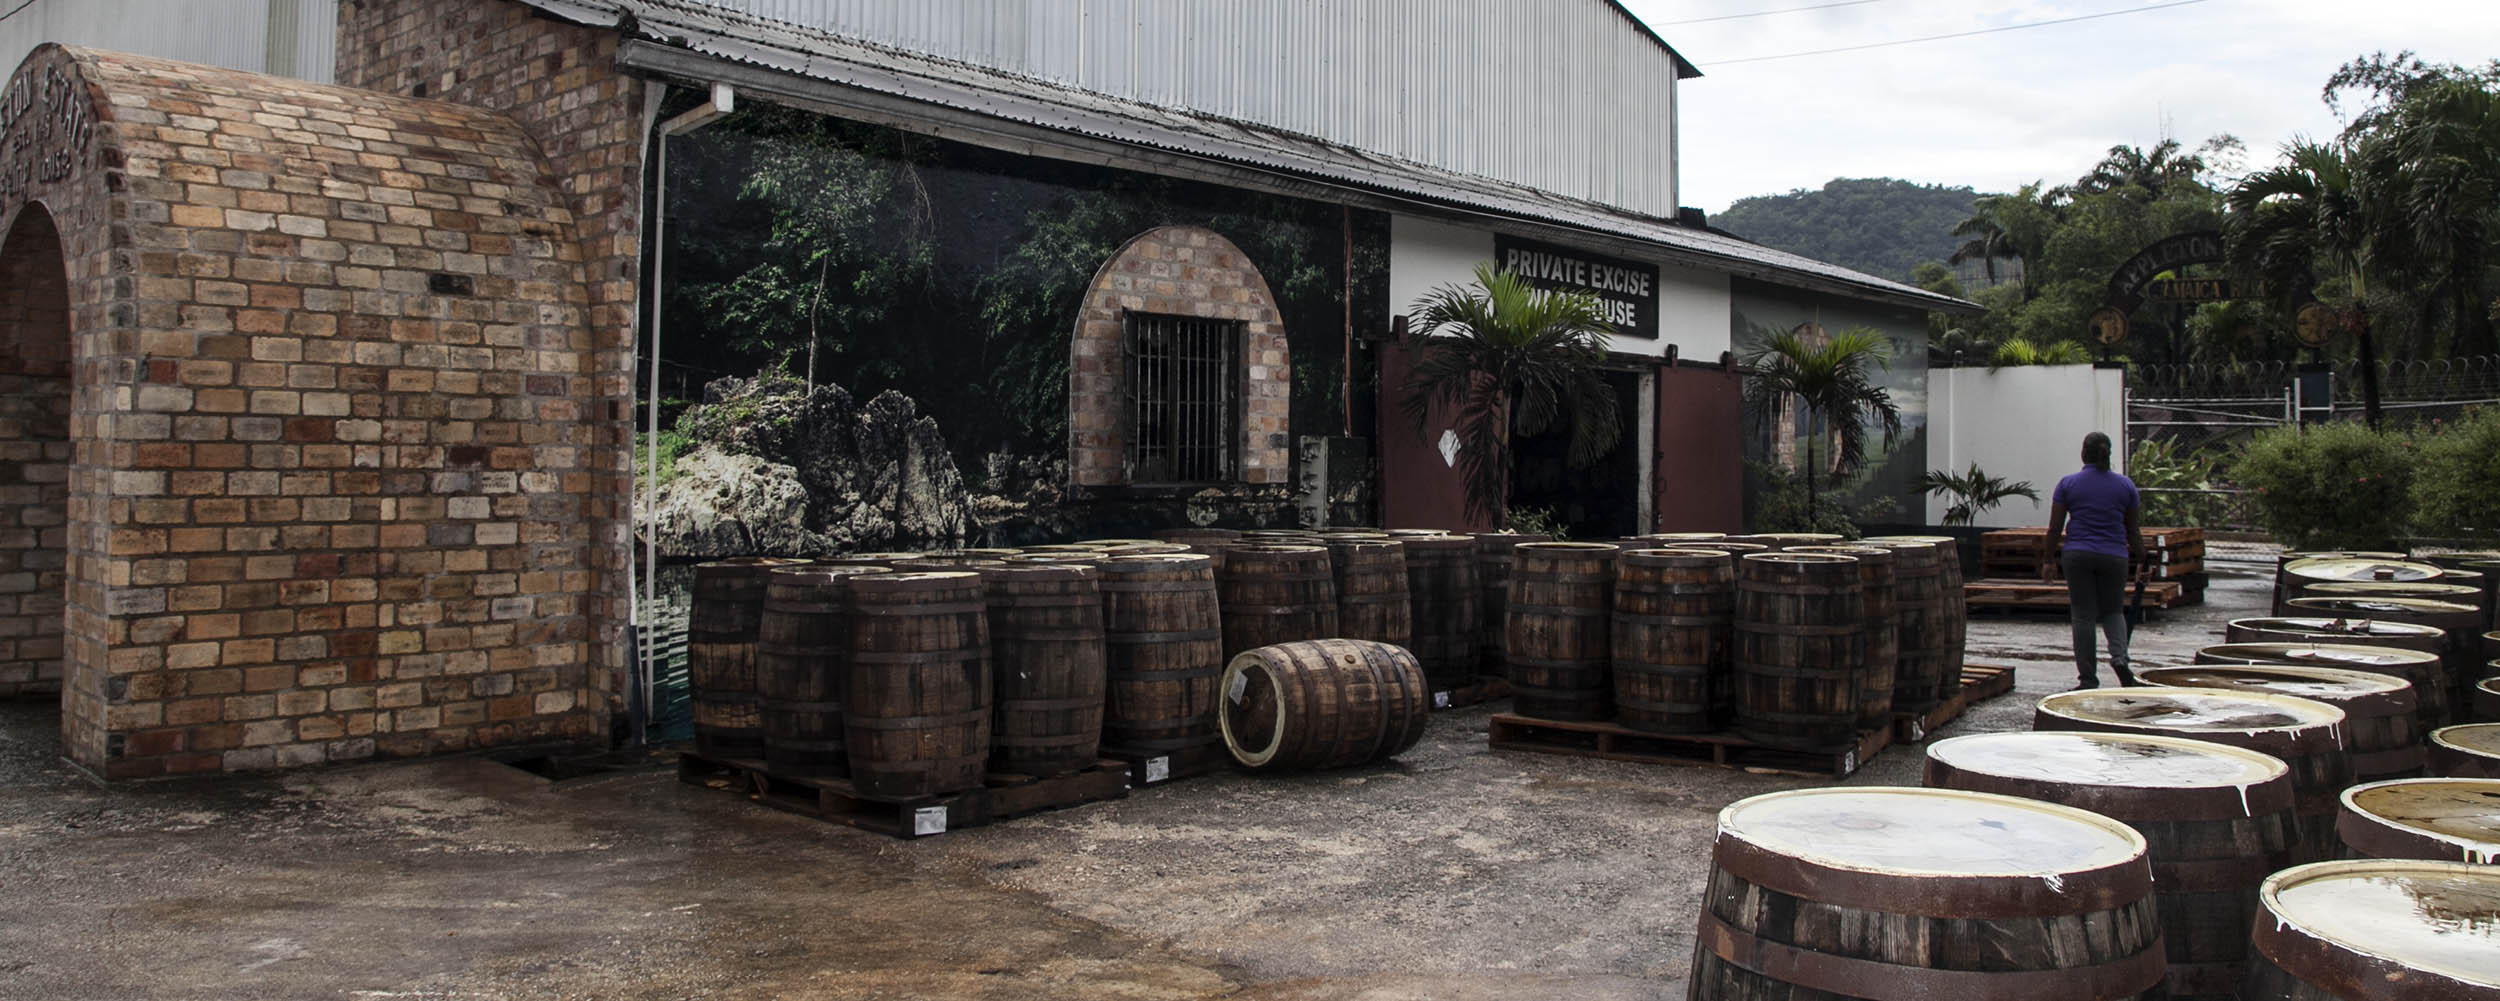 Appleton Estate Rum Factory - Jamaica